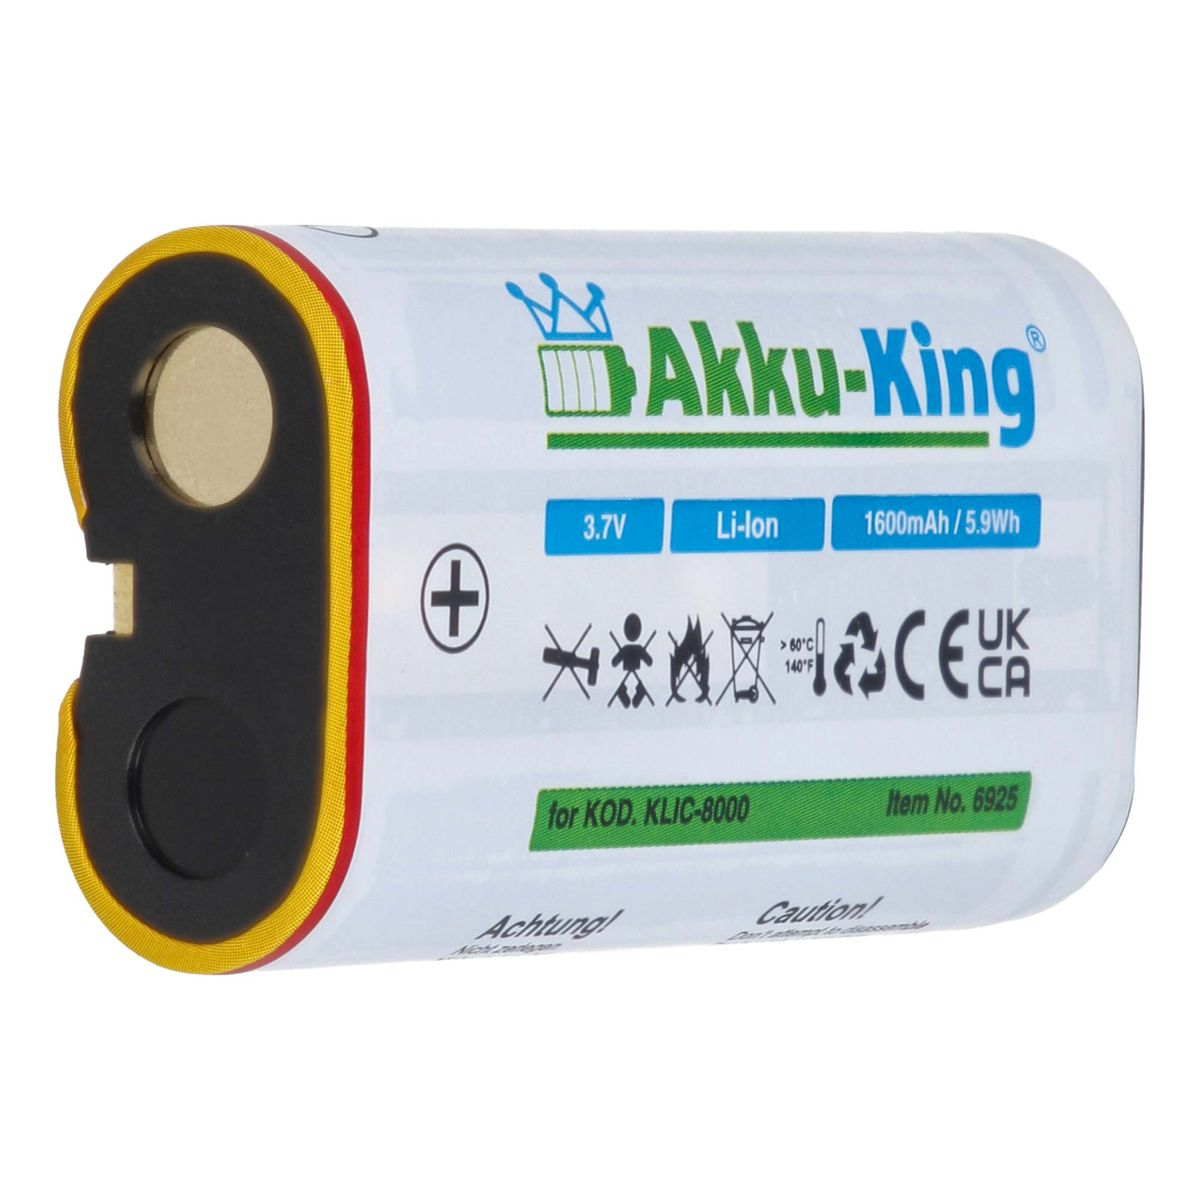 Kamera-Akku, Li-Ion Klic-8000 1600mAh mit Volt, kompatibel Kodak Akku 3.7 AKKU-KING